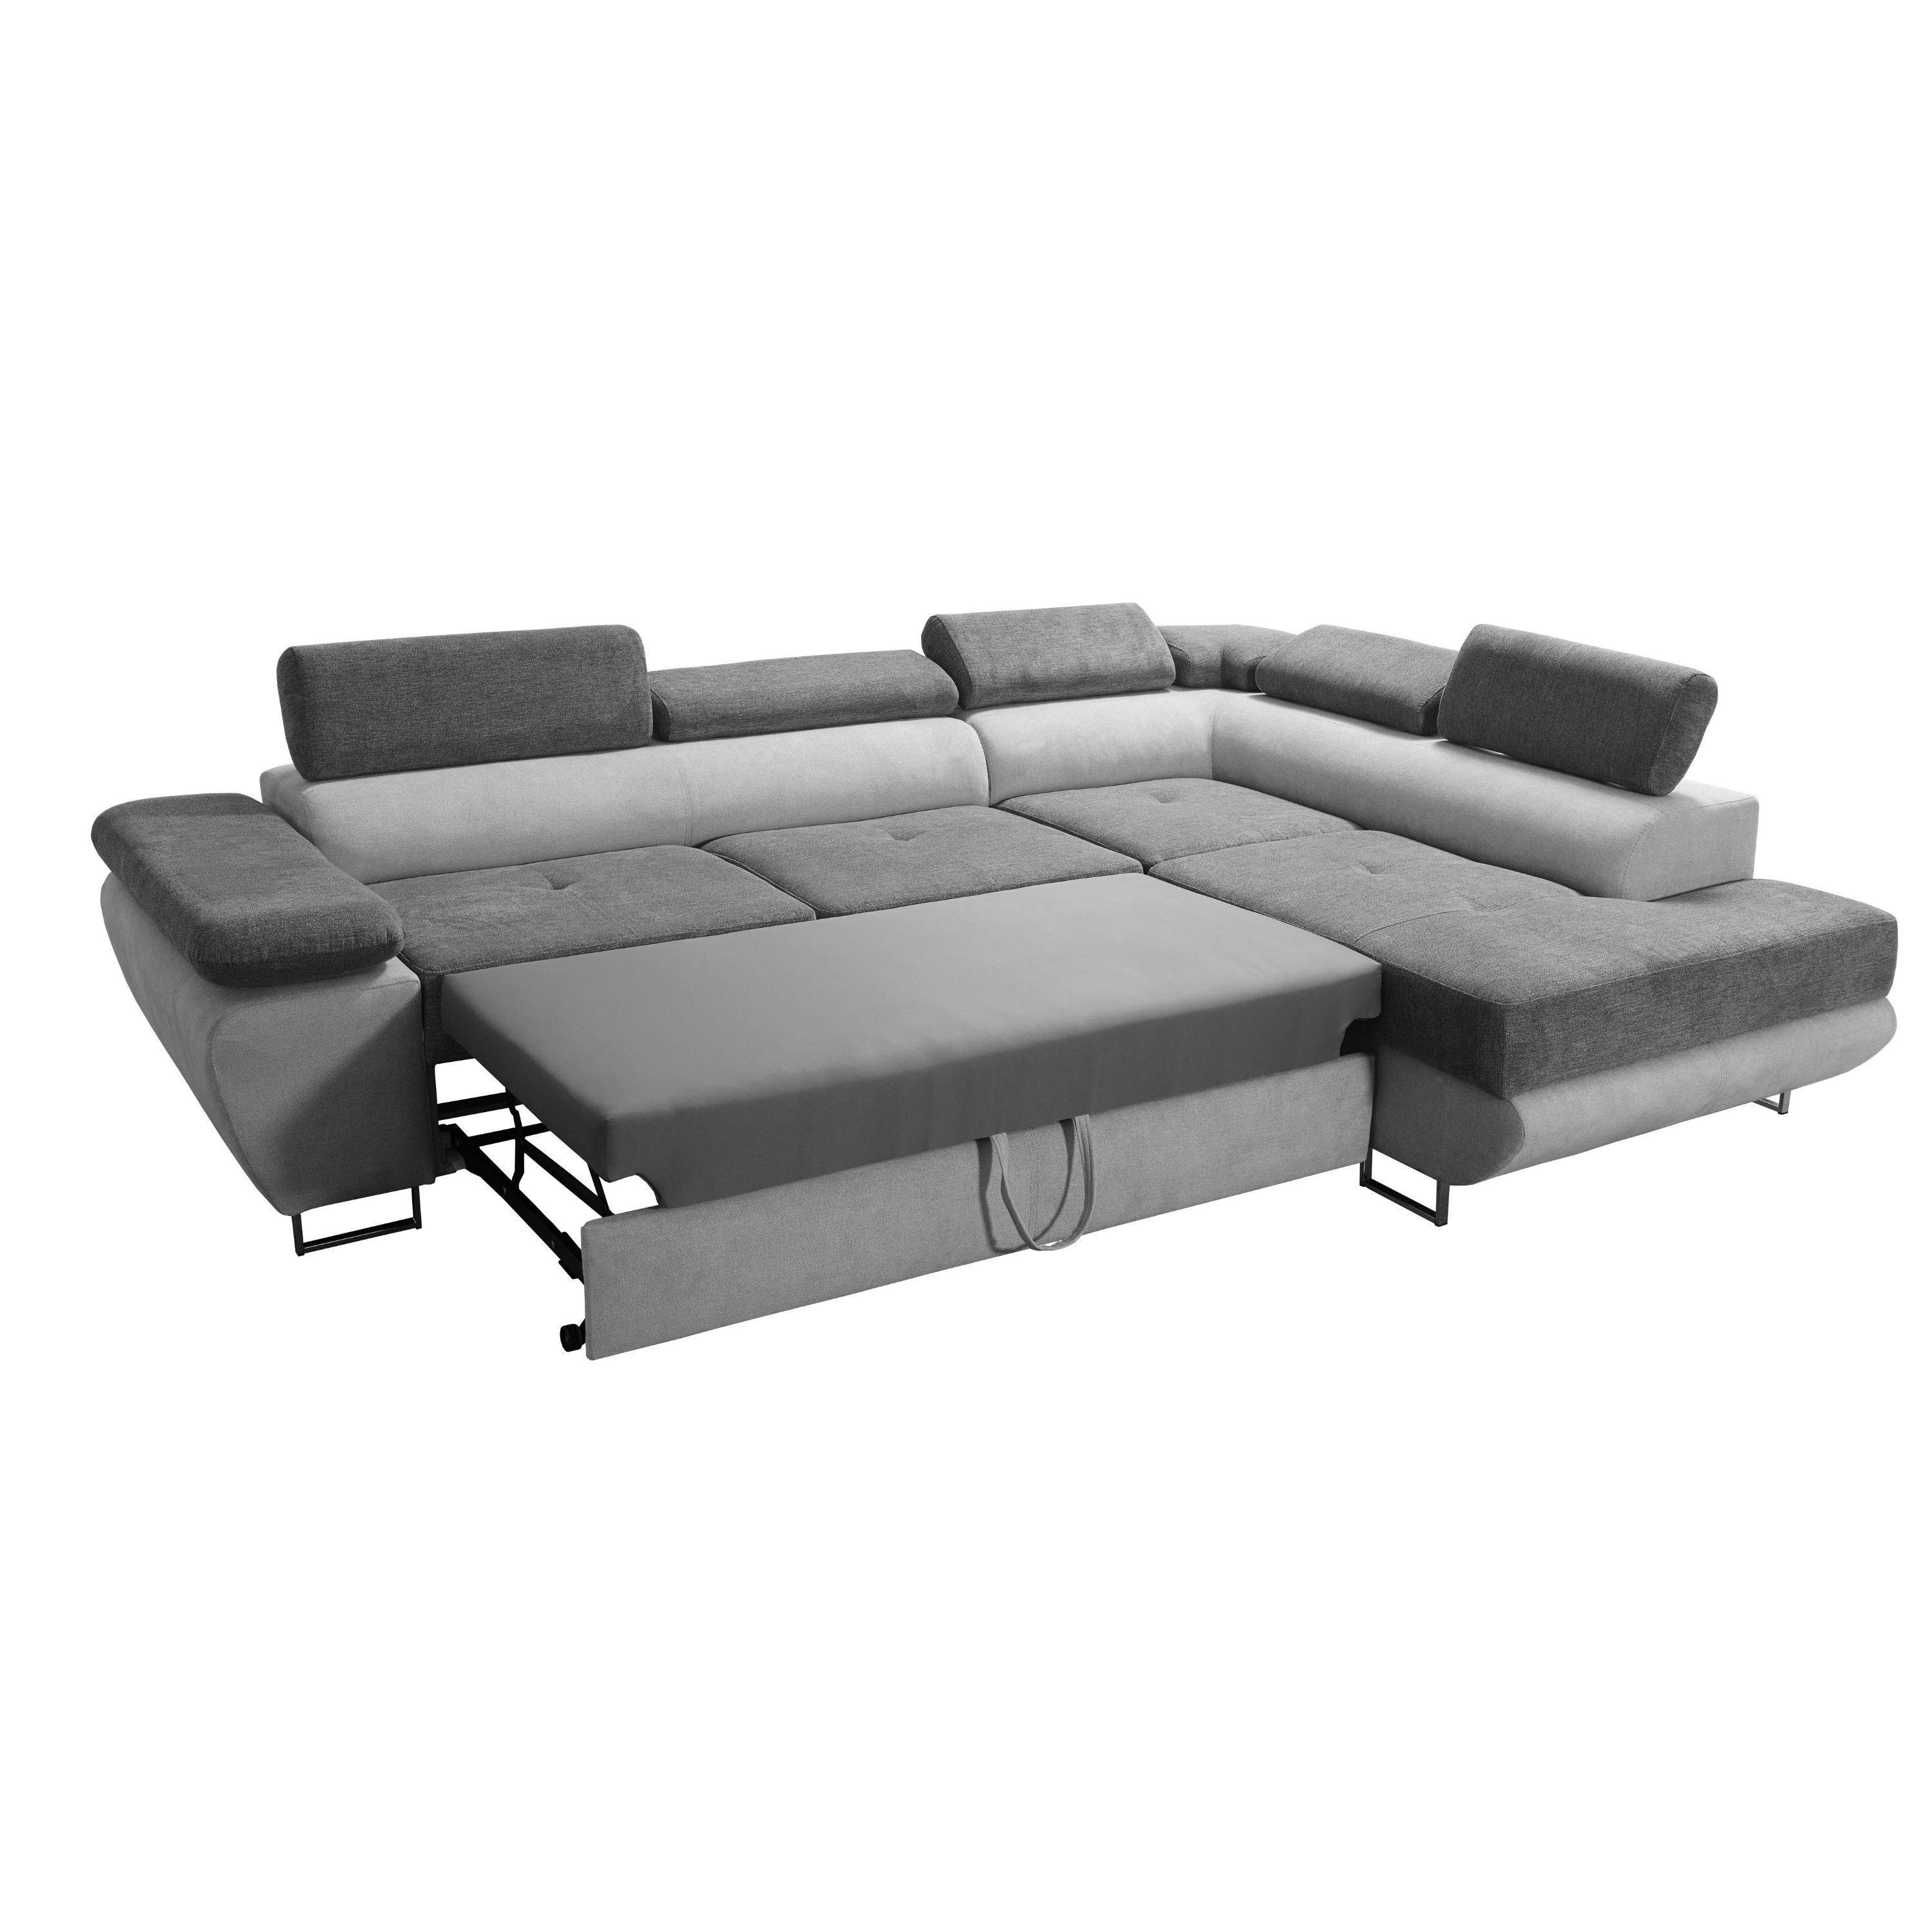 SILVER+ANTHRACITE Schlaffunktion Ecksofa Wenus Premium robin Kopfstützen Verstellbare Bettkasten Sofa